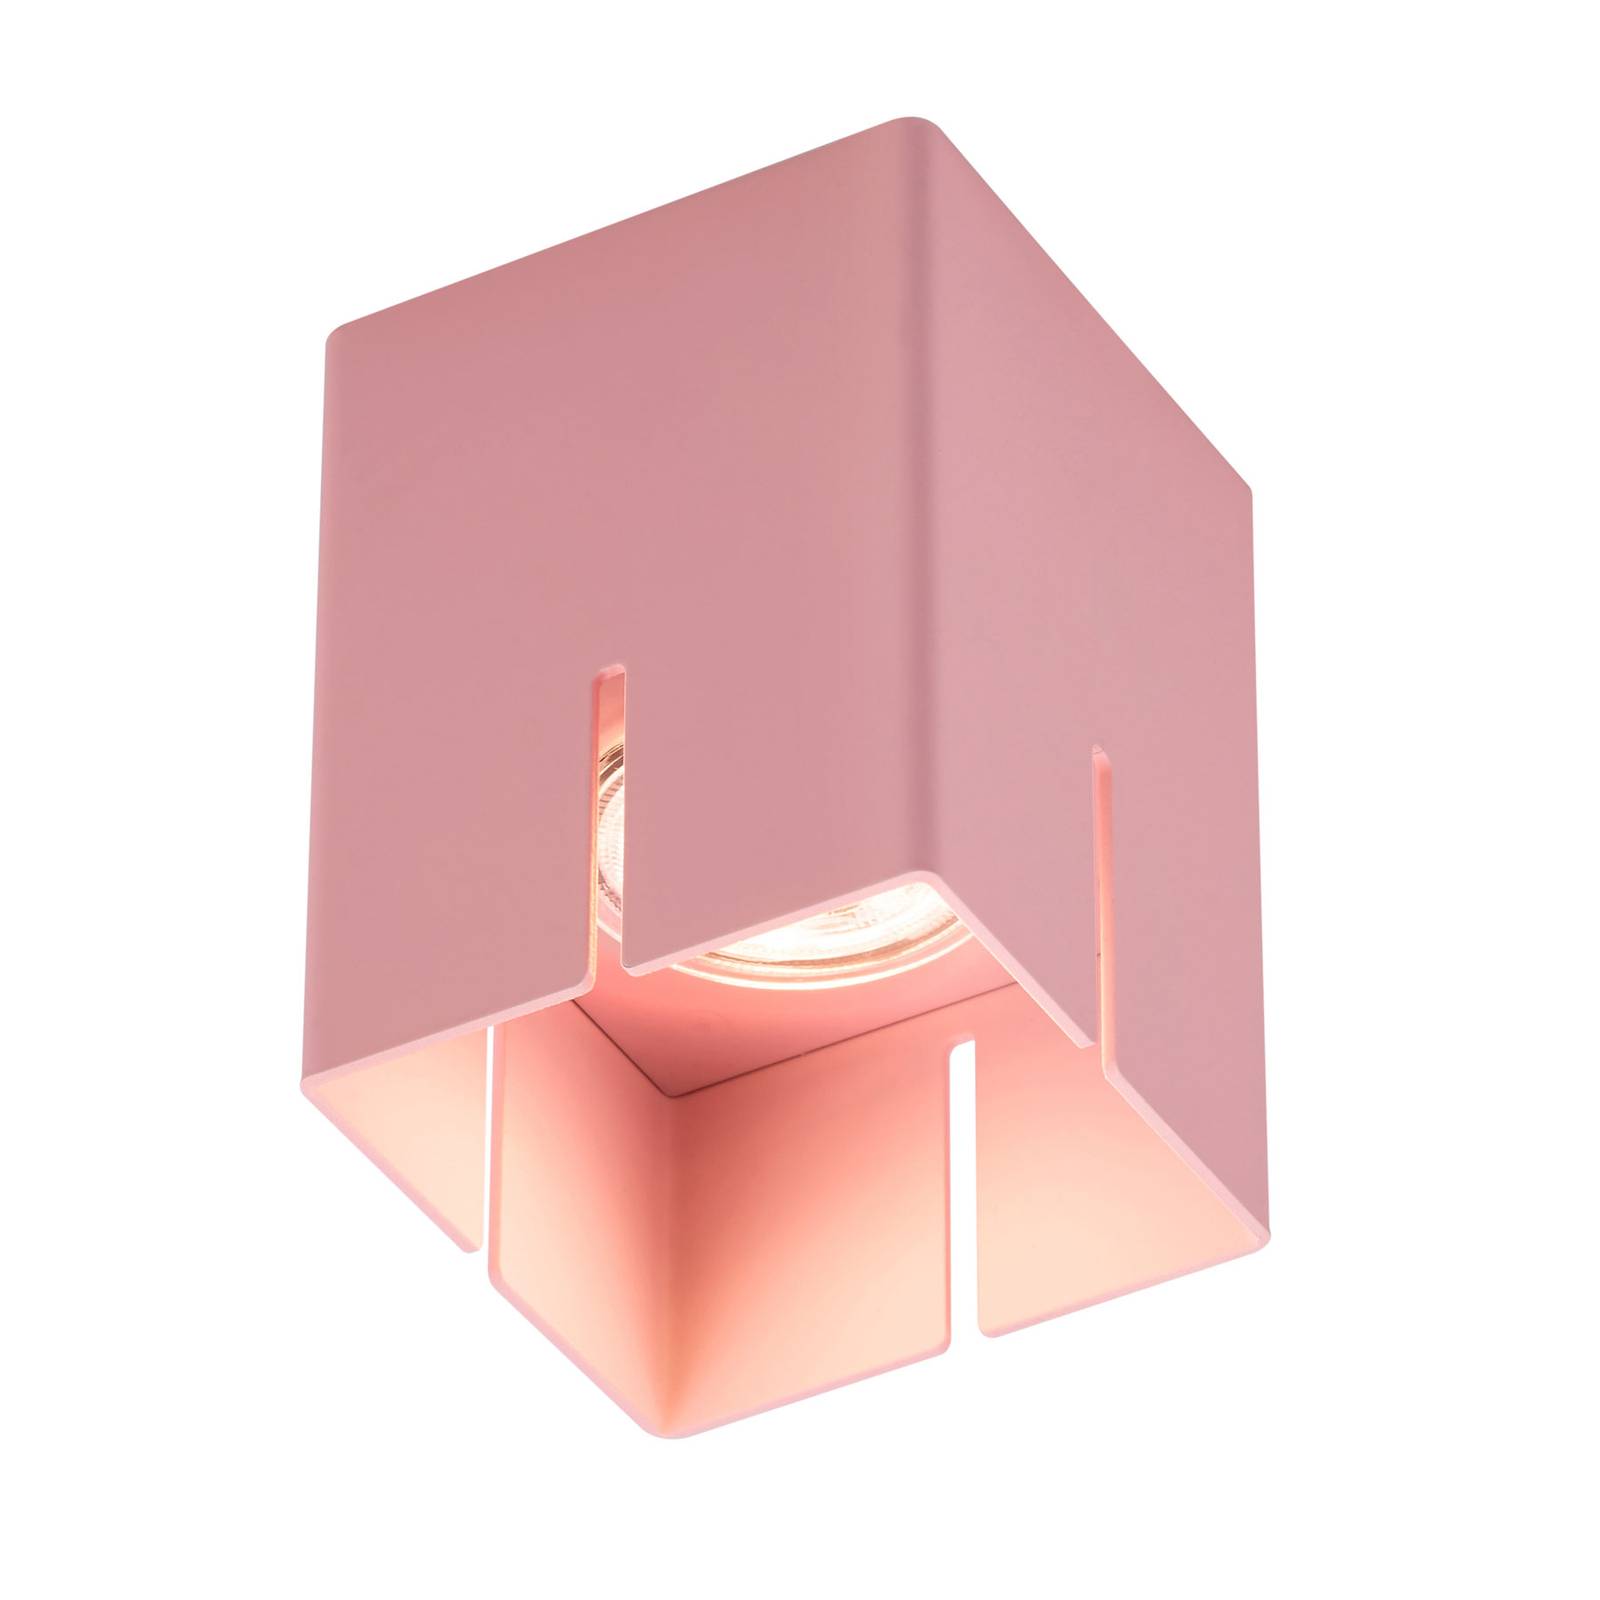 Baulmann 83.200 Deckenleuchte, rosa, Höhe 10 cm